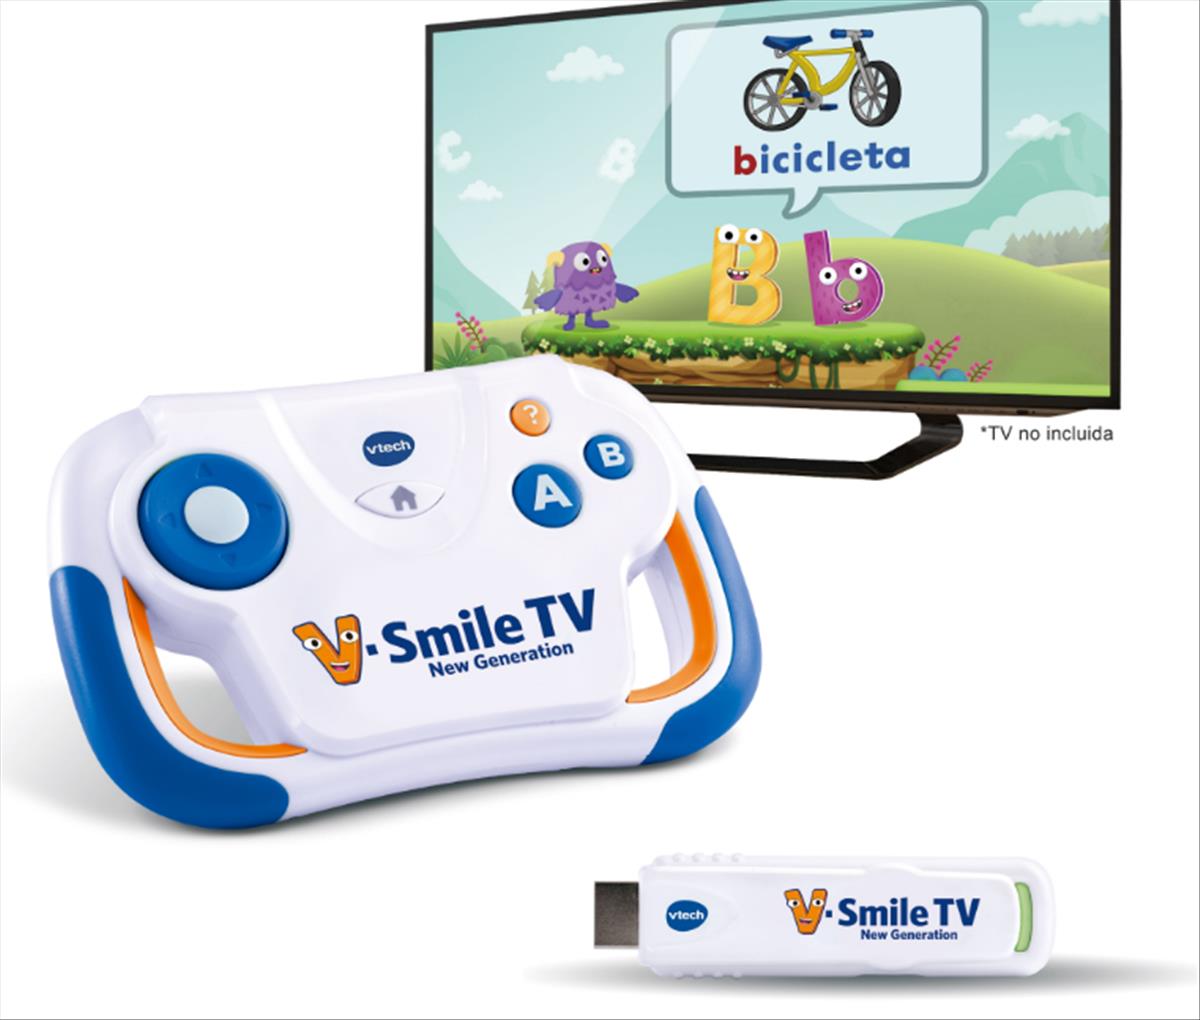 V.Smile TV, nueva plataforma de juegos educativos para niños de 3 a 7 años